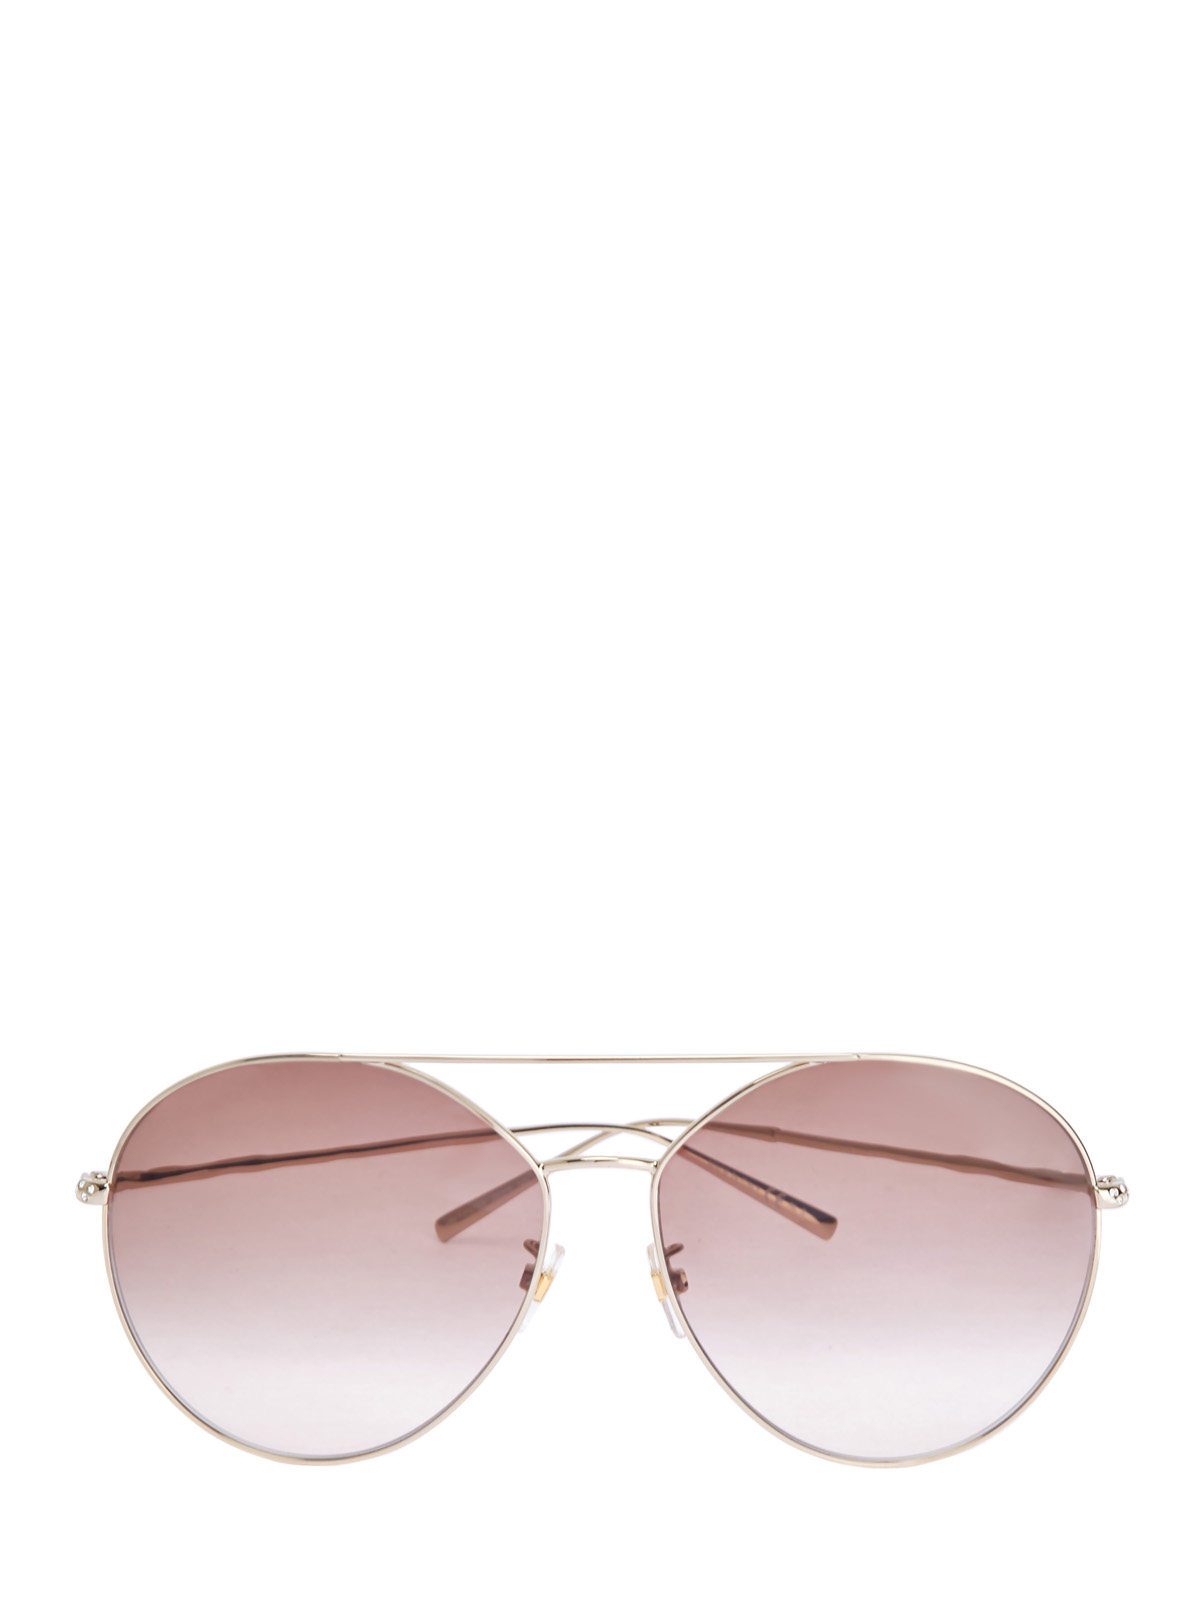 Очки-авиаторы в тонкой оправе с отделкой стразами GIVENCHY (sunglasses), цвет розовый, размер S;M;L - фото 1